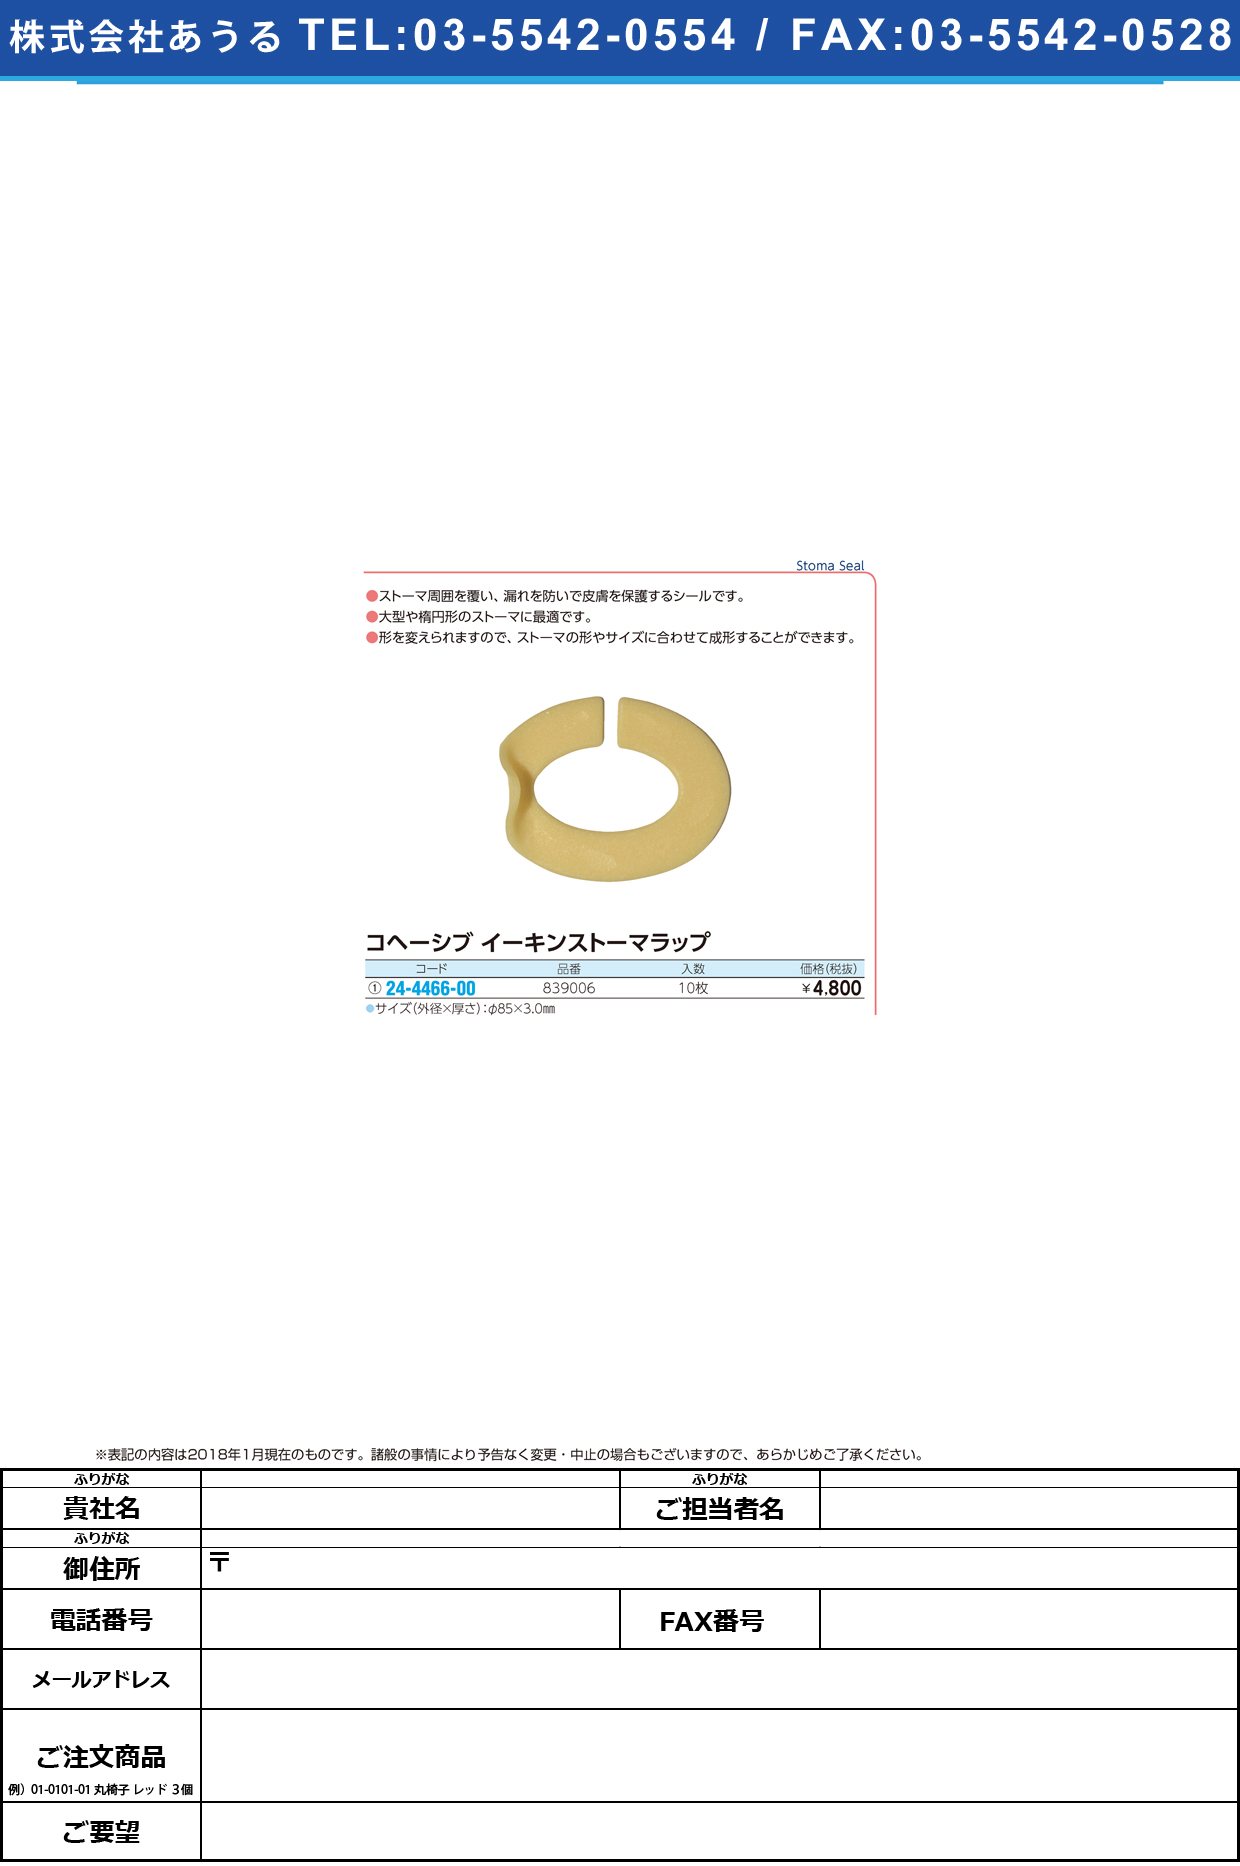 (24-4466-00)イーキンストーマラップ 839006(10ﾏｲ) ｲｰｷﾝｽﾄｰﾏﾗｯﾌﾟ【1箱単位】【2019年カタログ商品】